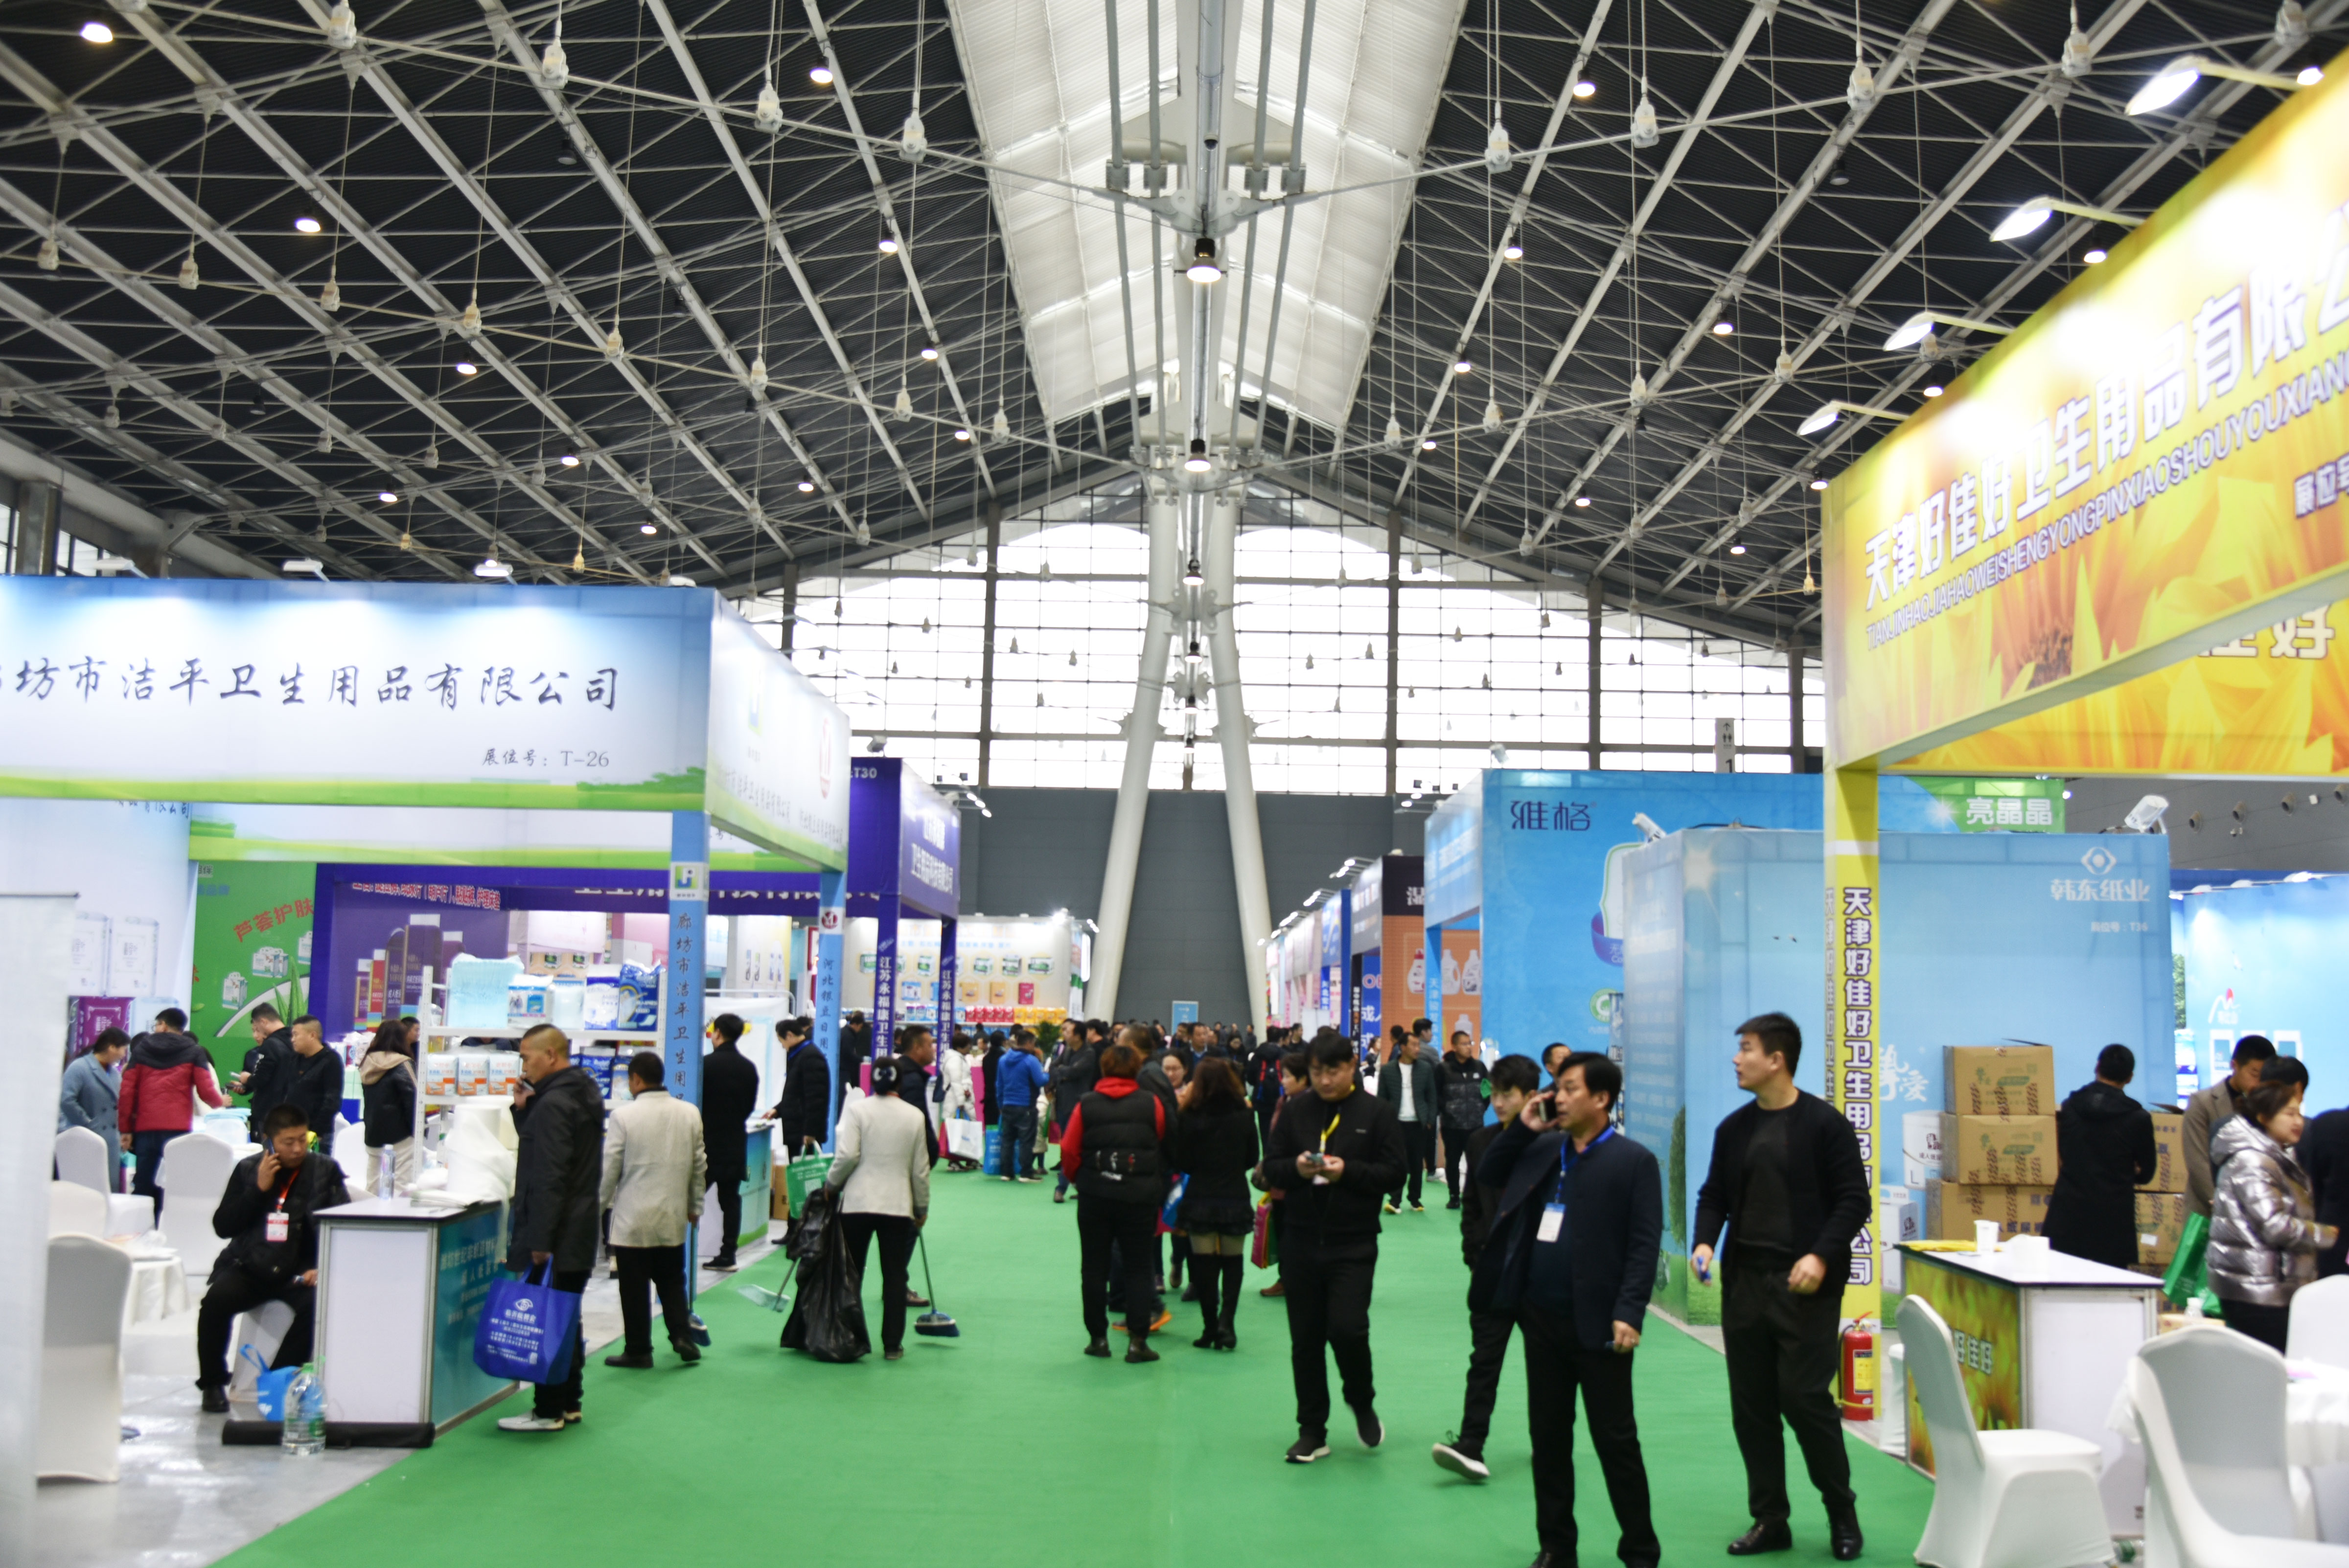 2019年11月16日-2019华北(石家庄)生活用纸产品技术展览会